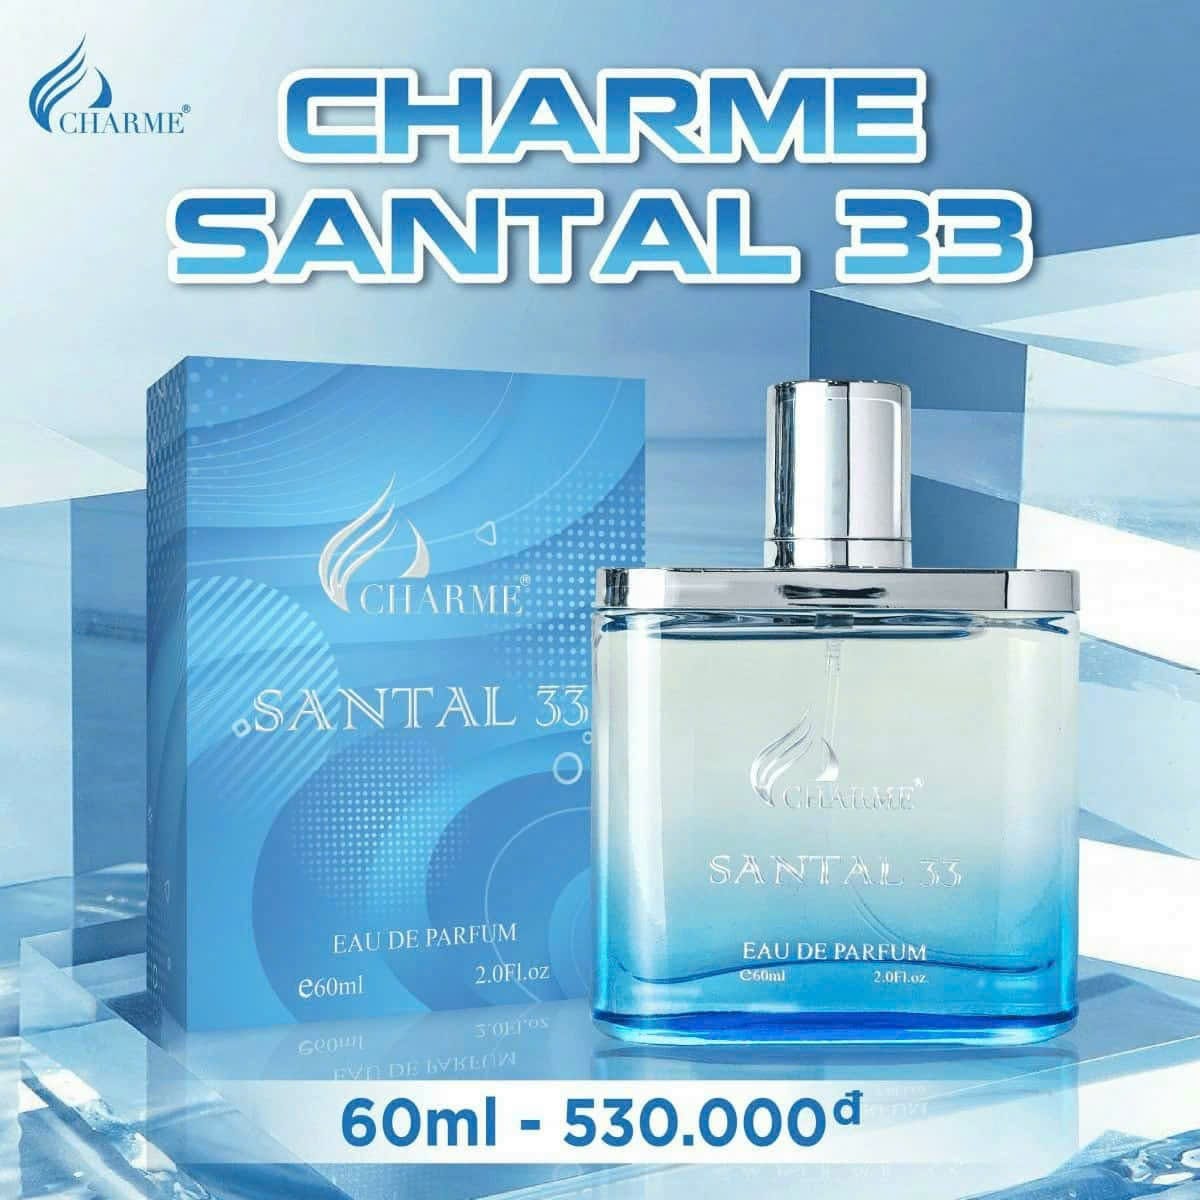 Mùi hương Charme Santal33 mang lại nét đặc trưng nổi bật